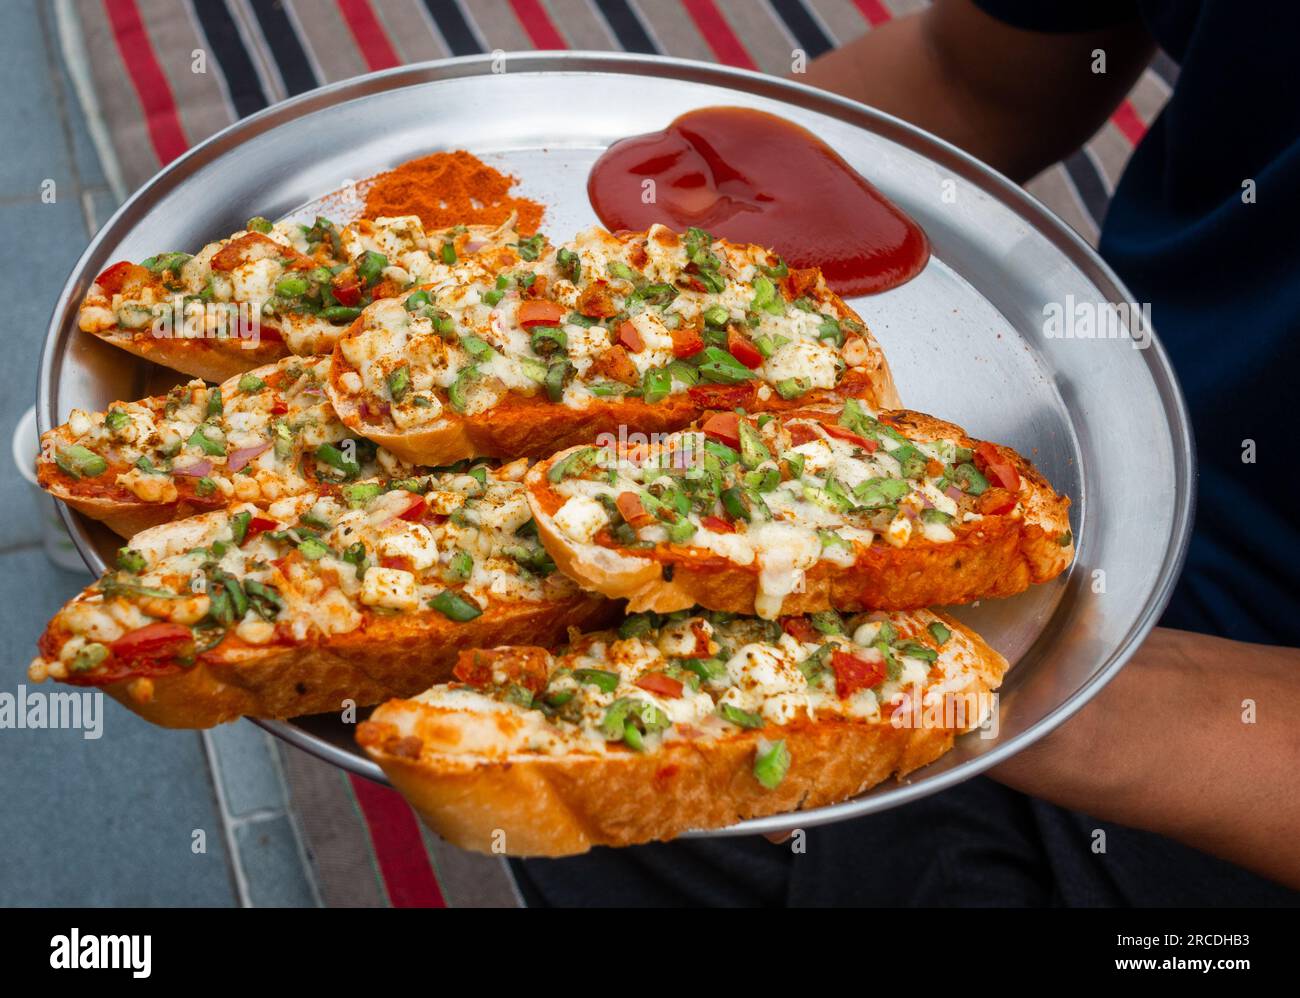 Hände halten hausgemachtes Ingwer-Knoblauchbrot mit Käse und indischen Kräutern. Indien Stockfoto